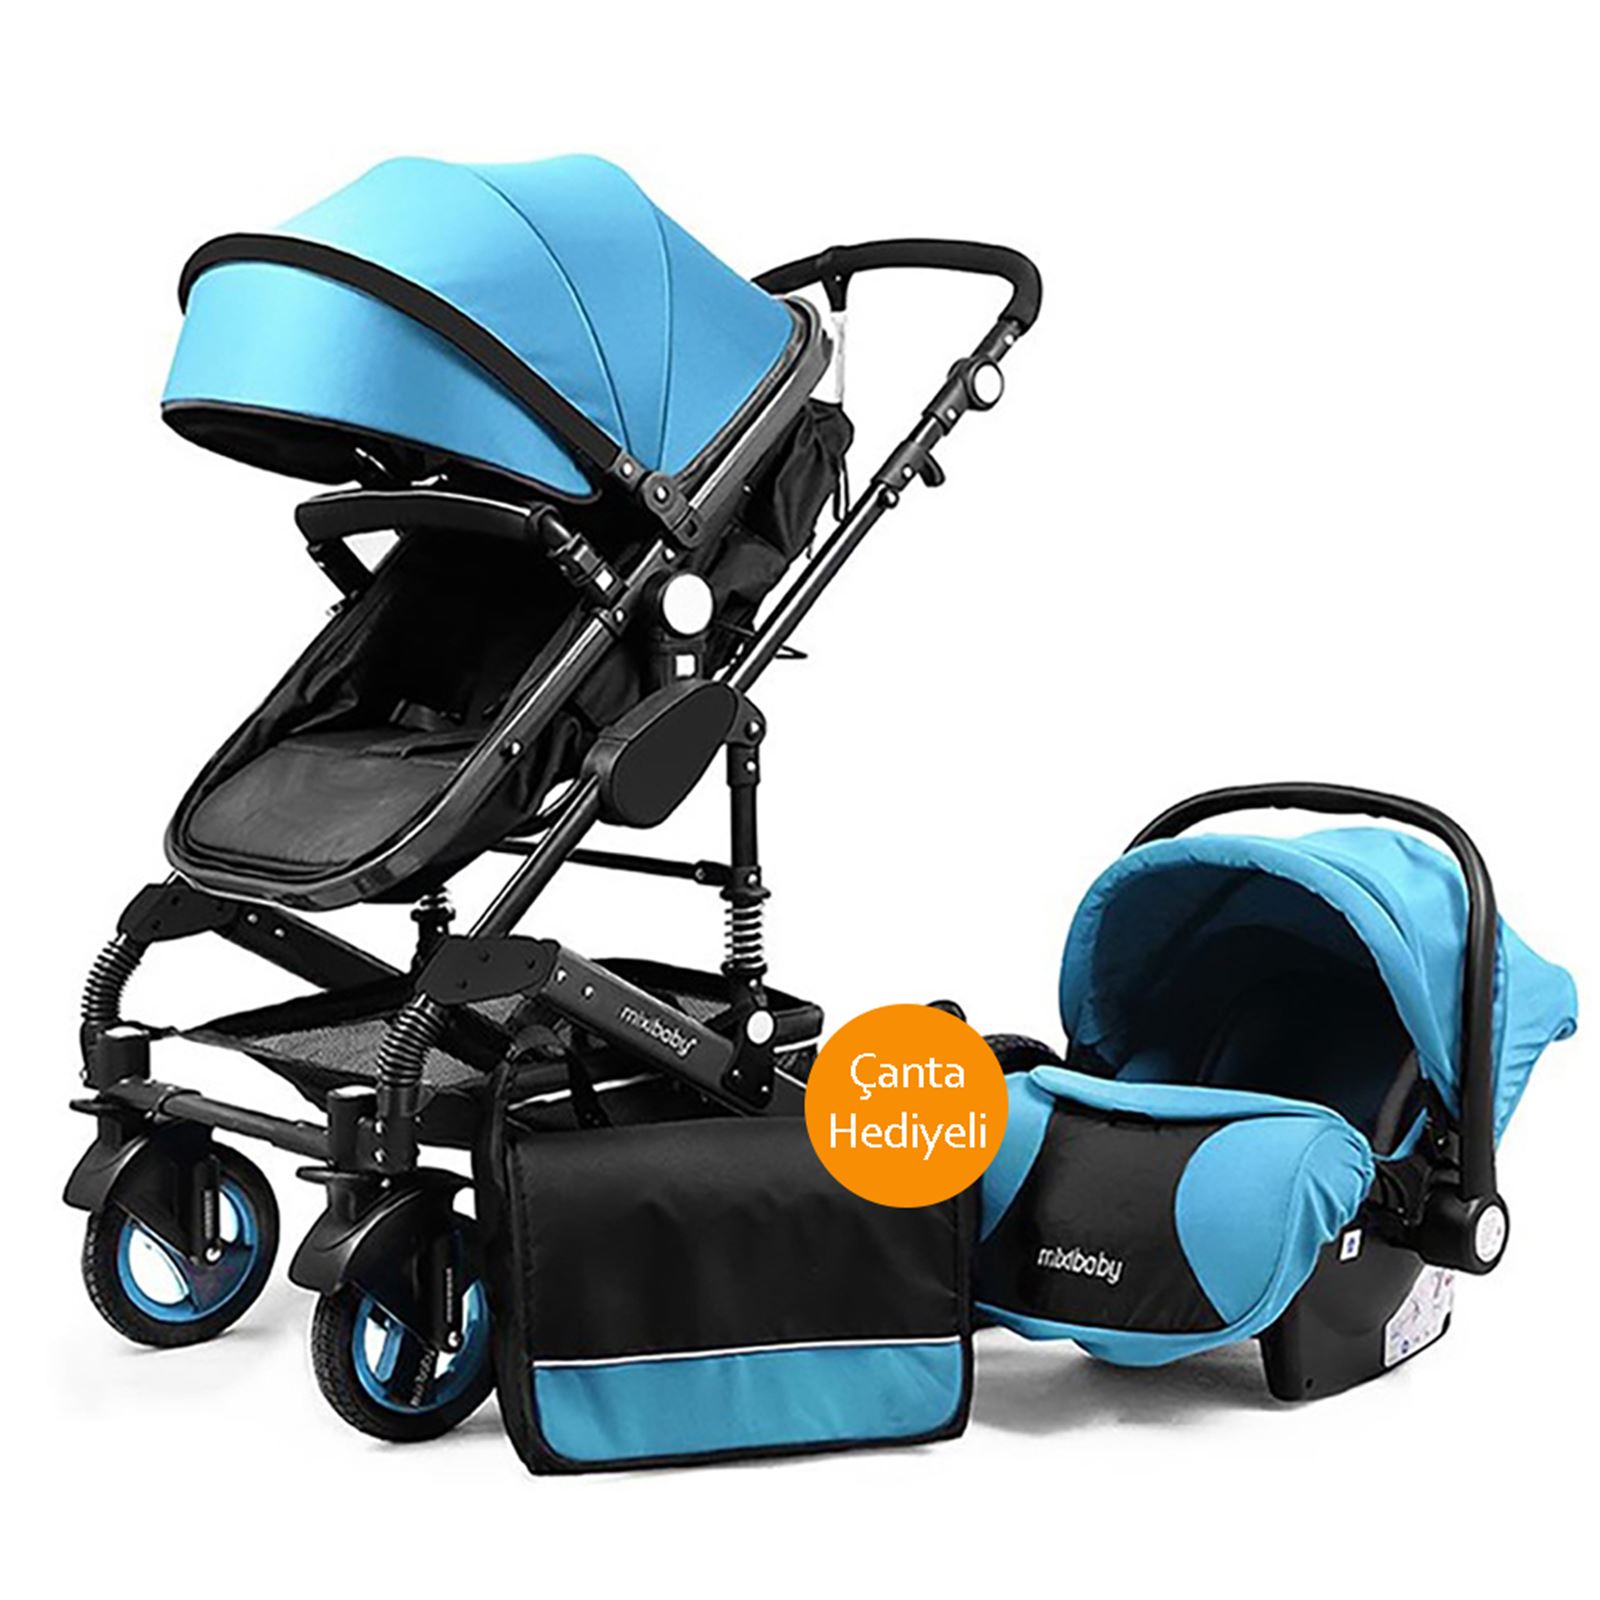 Mixi Baby Travel Sistem Bebek Arabası Mavi